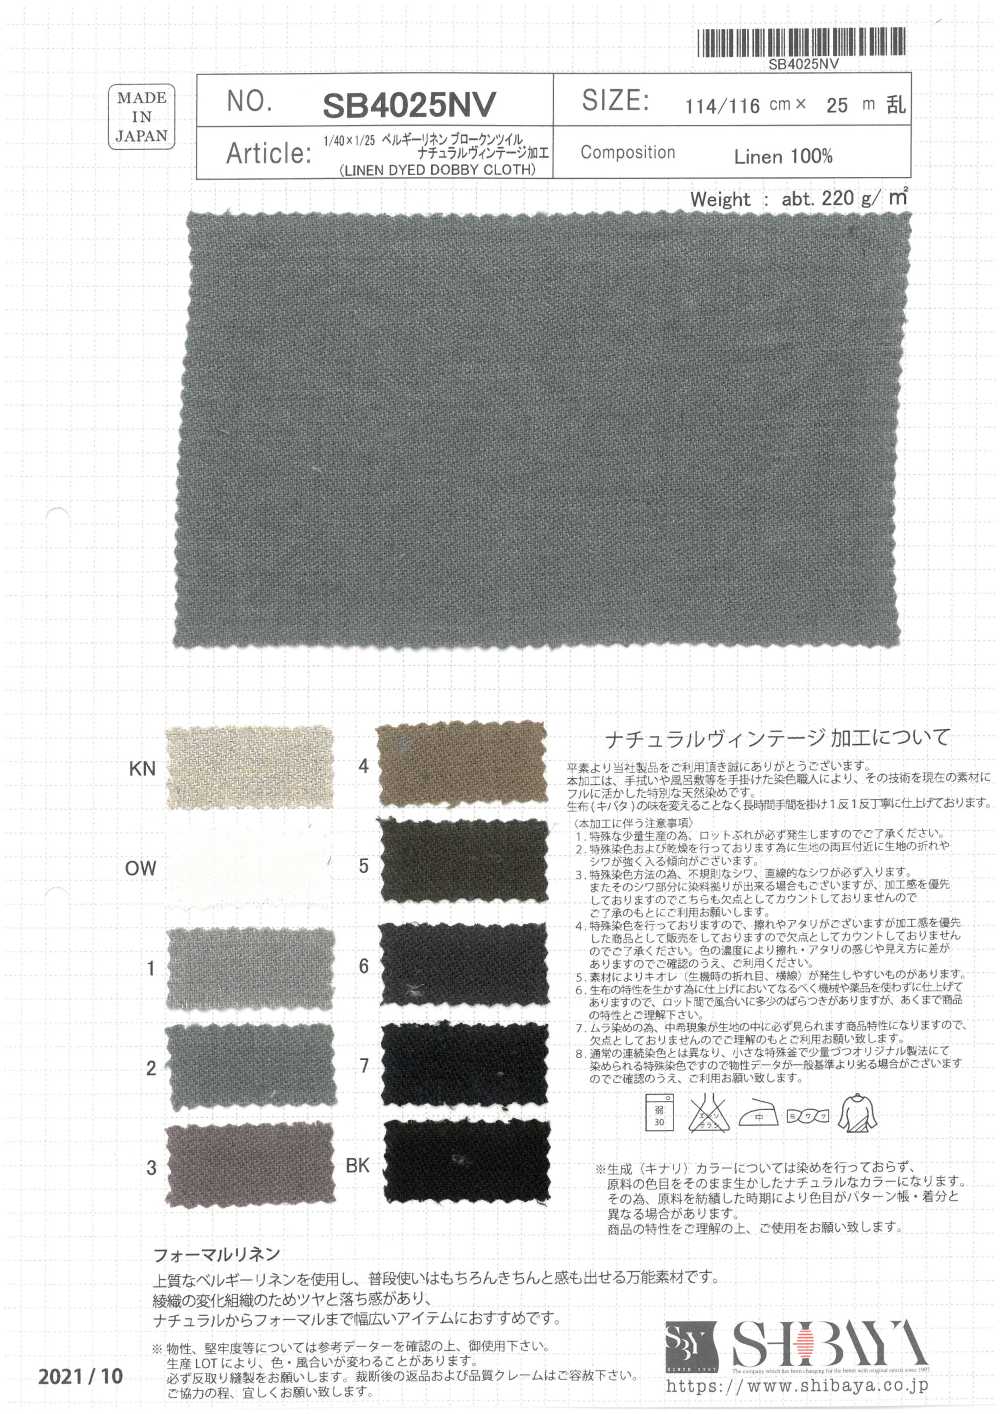 SB4025NV 1/40 × 1/25 Belgisches Leinen, Gebrochener Twill, Natürliche Vintage-Verarbeitung[Textilgewebe] SHIBAYA